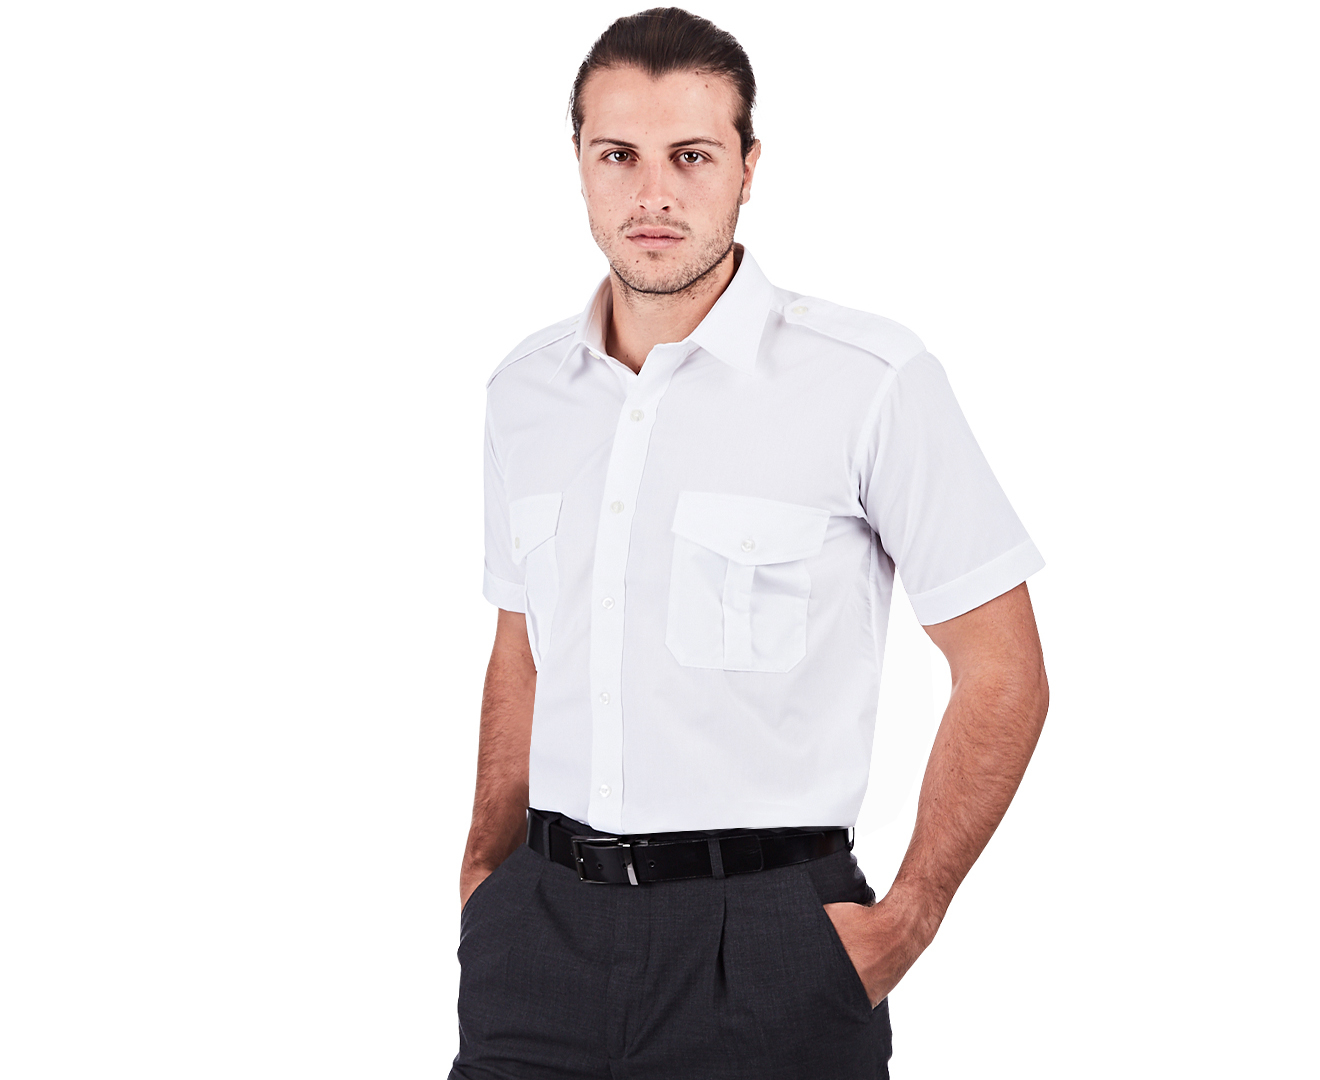 Totally Corporate Men's Short Sleeve Shirt - White